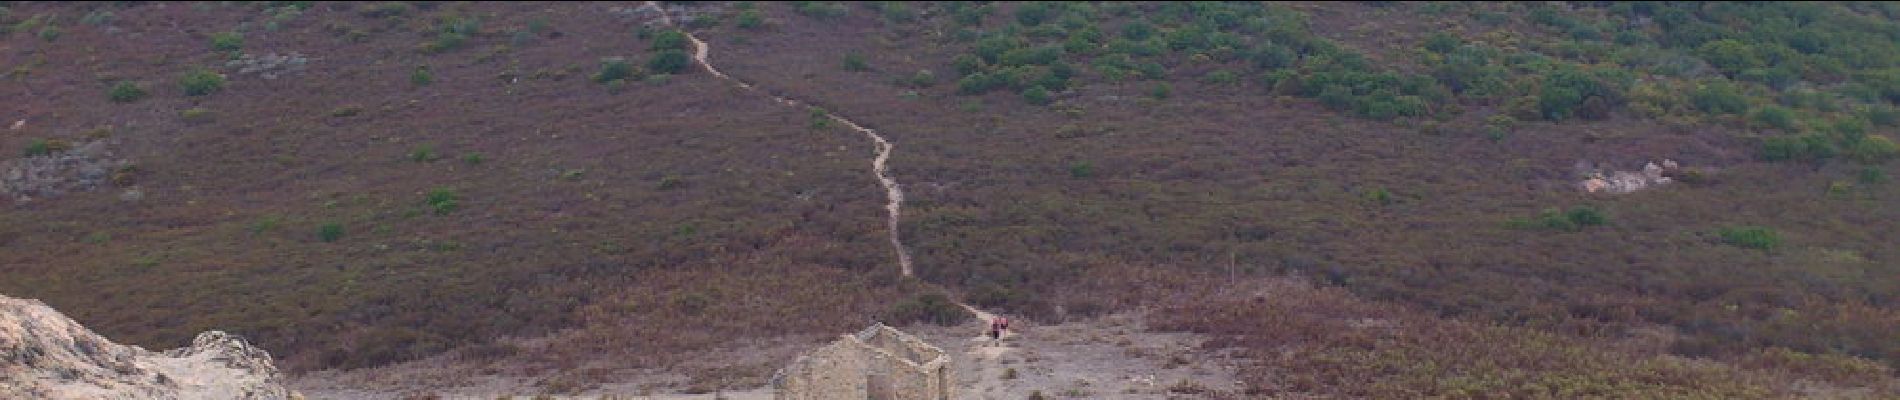 Punto de interés Appietto - 16 - Redecendons du Rocher des Gozzi pour grimper en face sur la Punta Pastinaca (814 m) - Photo